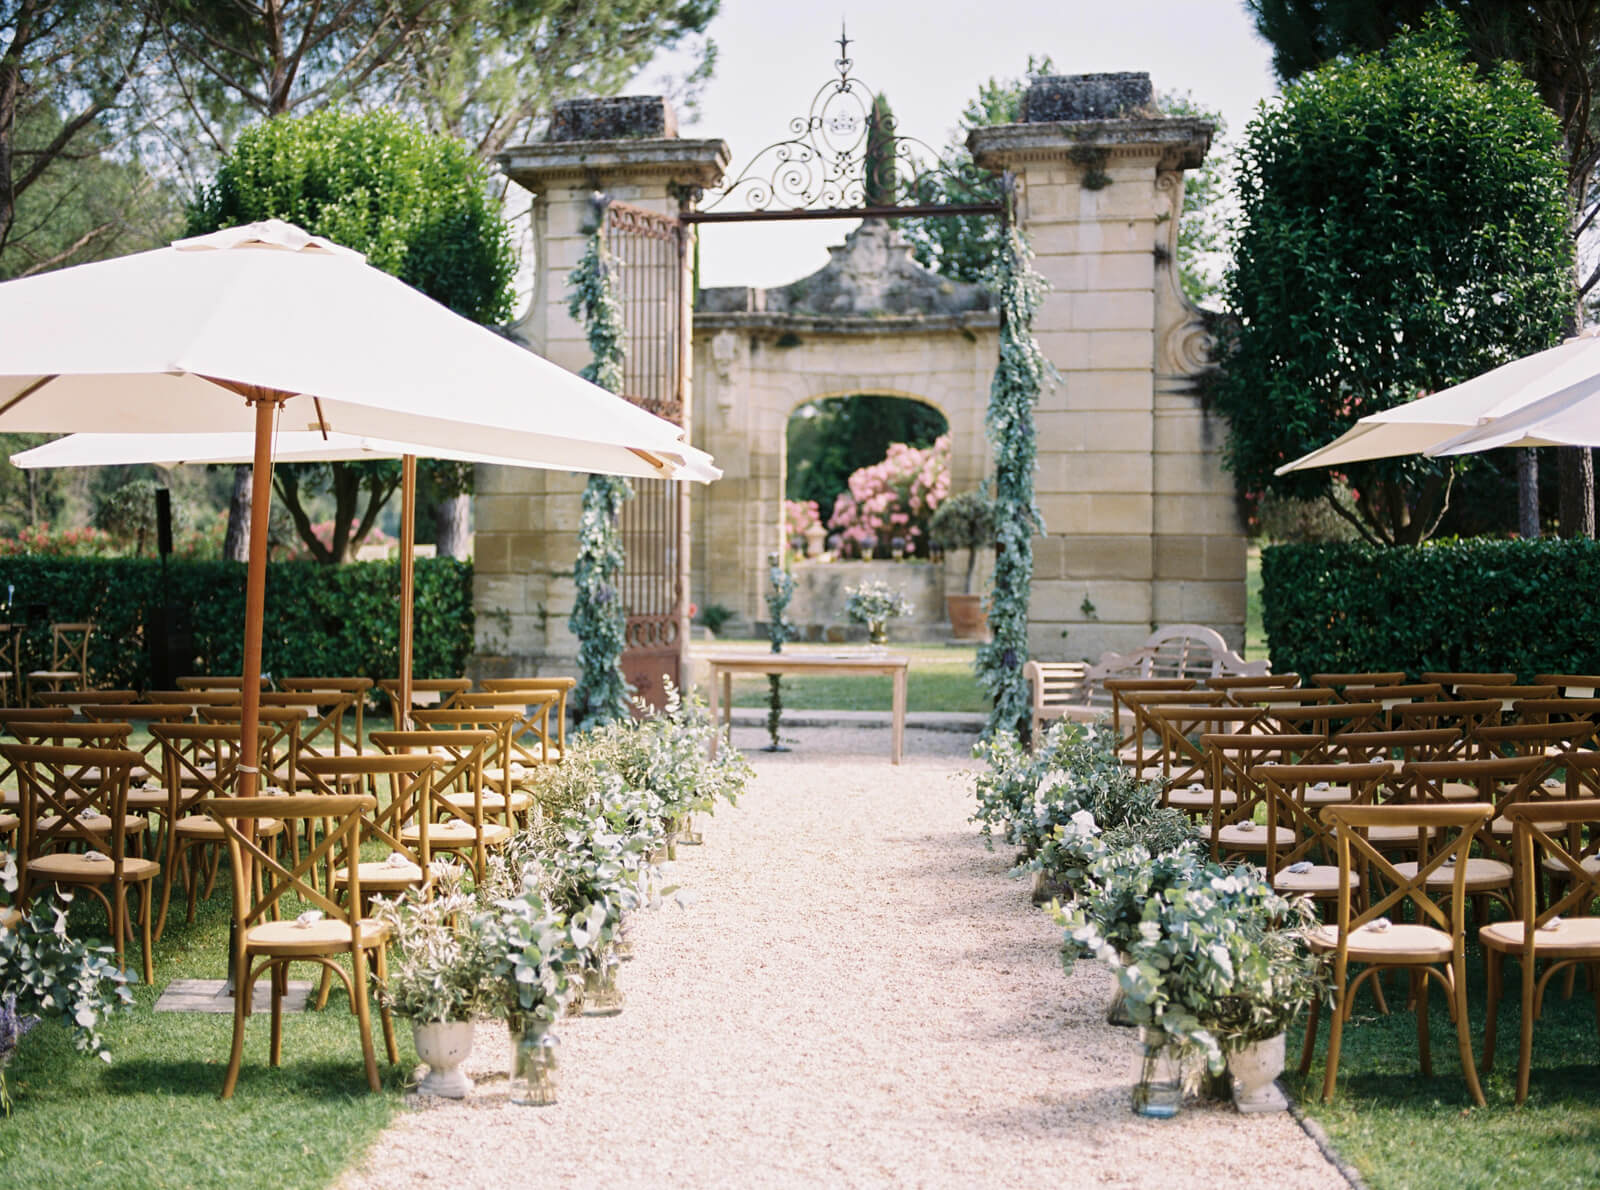 Bröllop i Provence Bröllopsplanering Petra Tungården Bröllop